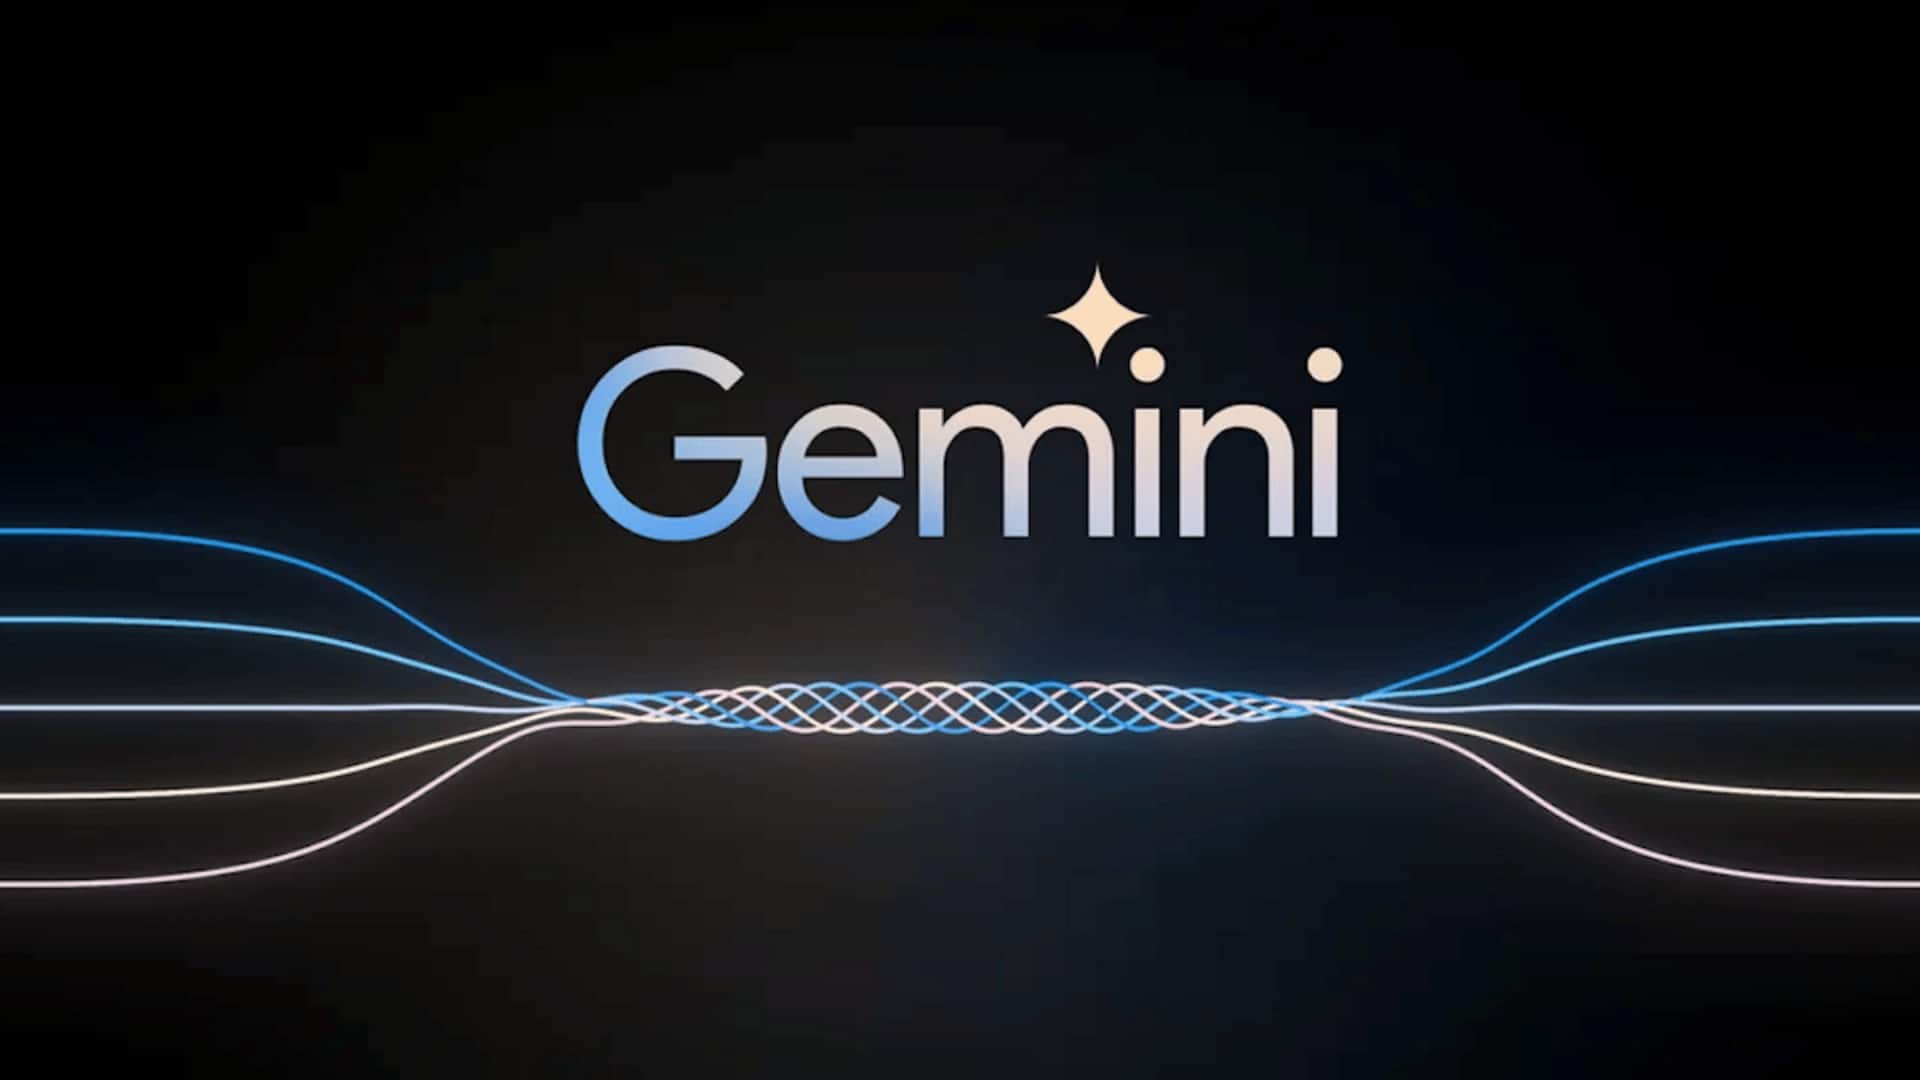 Will Google's Gemini disrupt the AI space? 